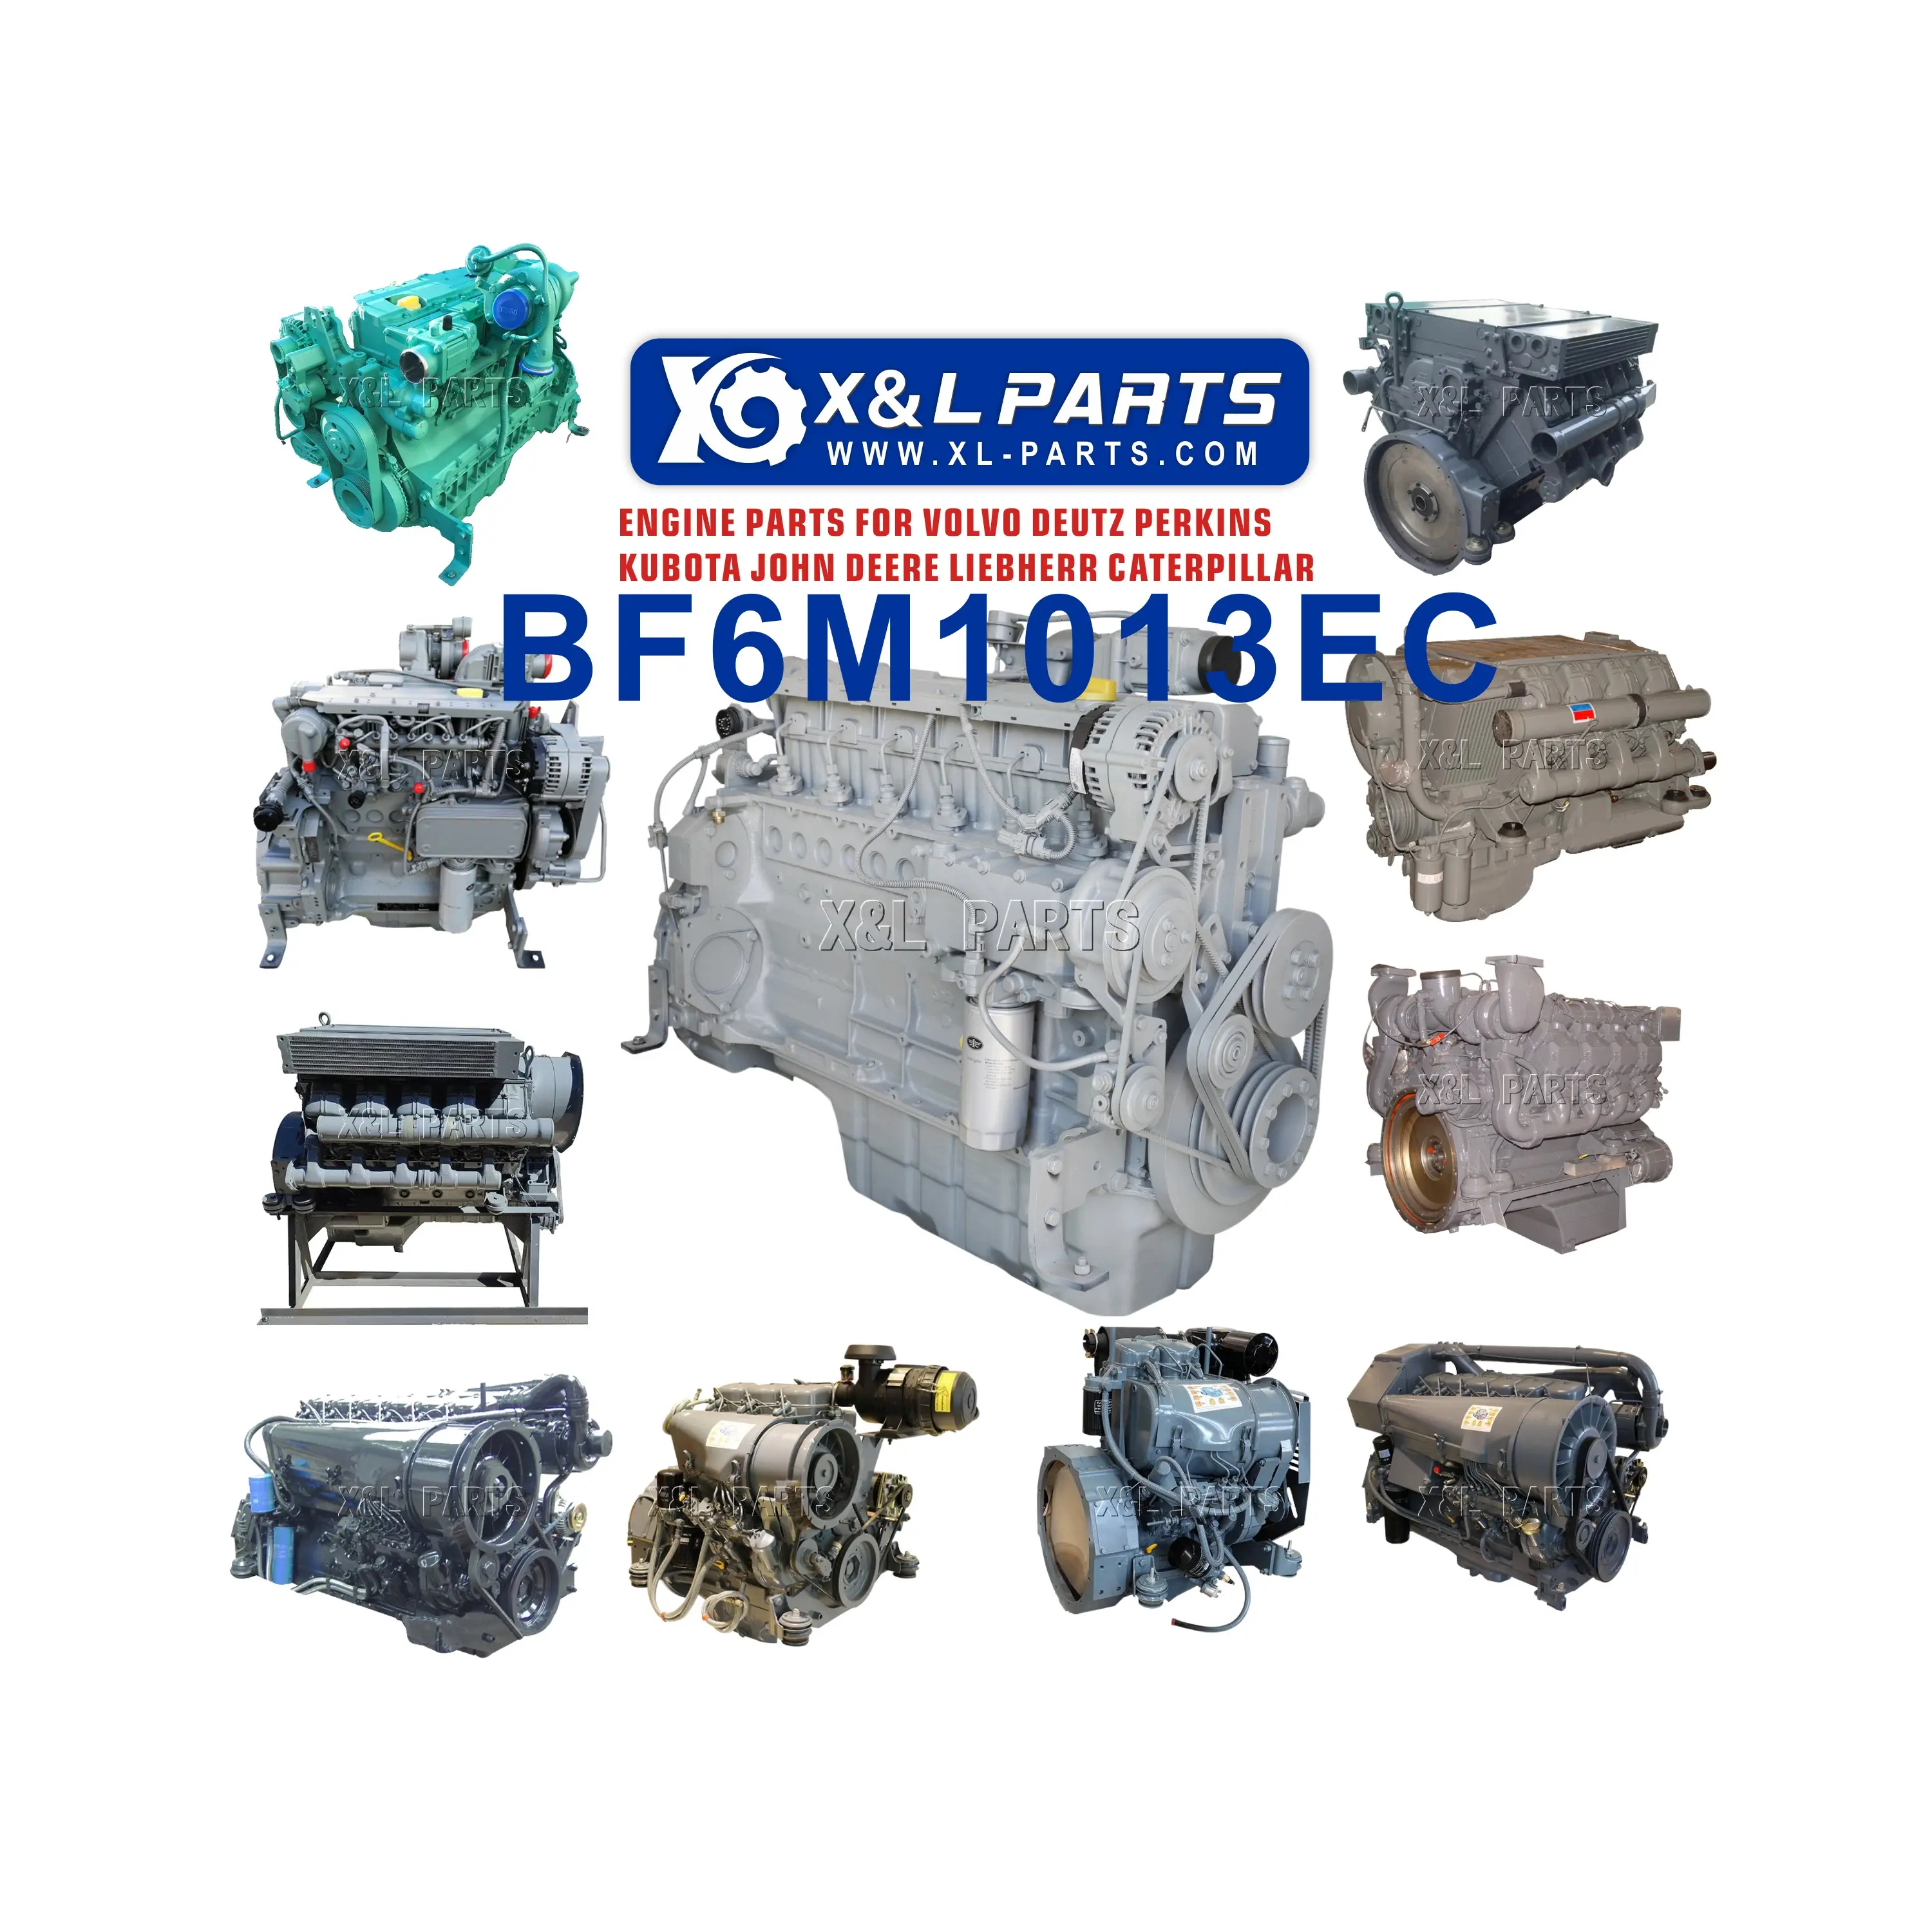 Motor diesel refrigerado a água de 6 cilindros para máquinas de construção BF6M1013 BF6M1013 BF6M1013EC para motor diesel Deutz